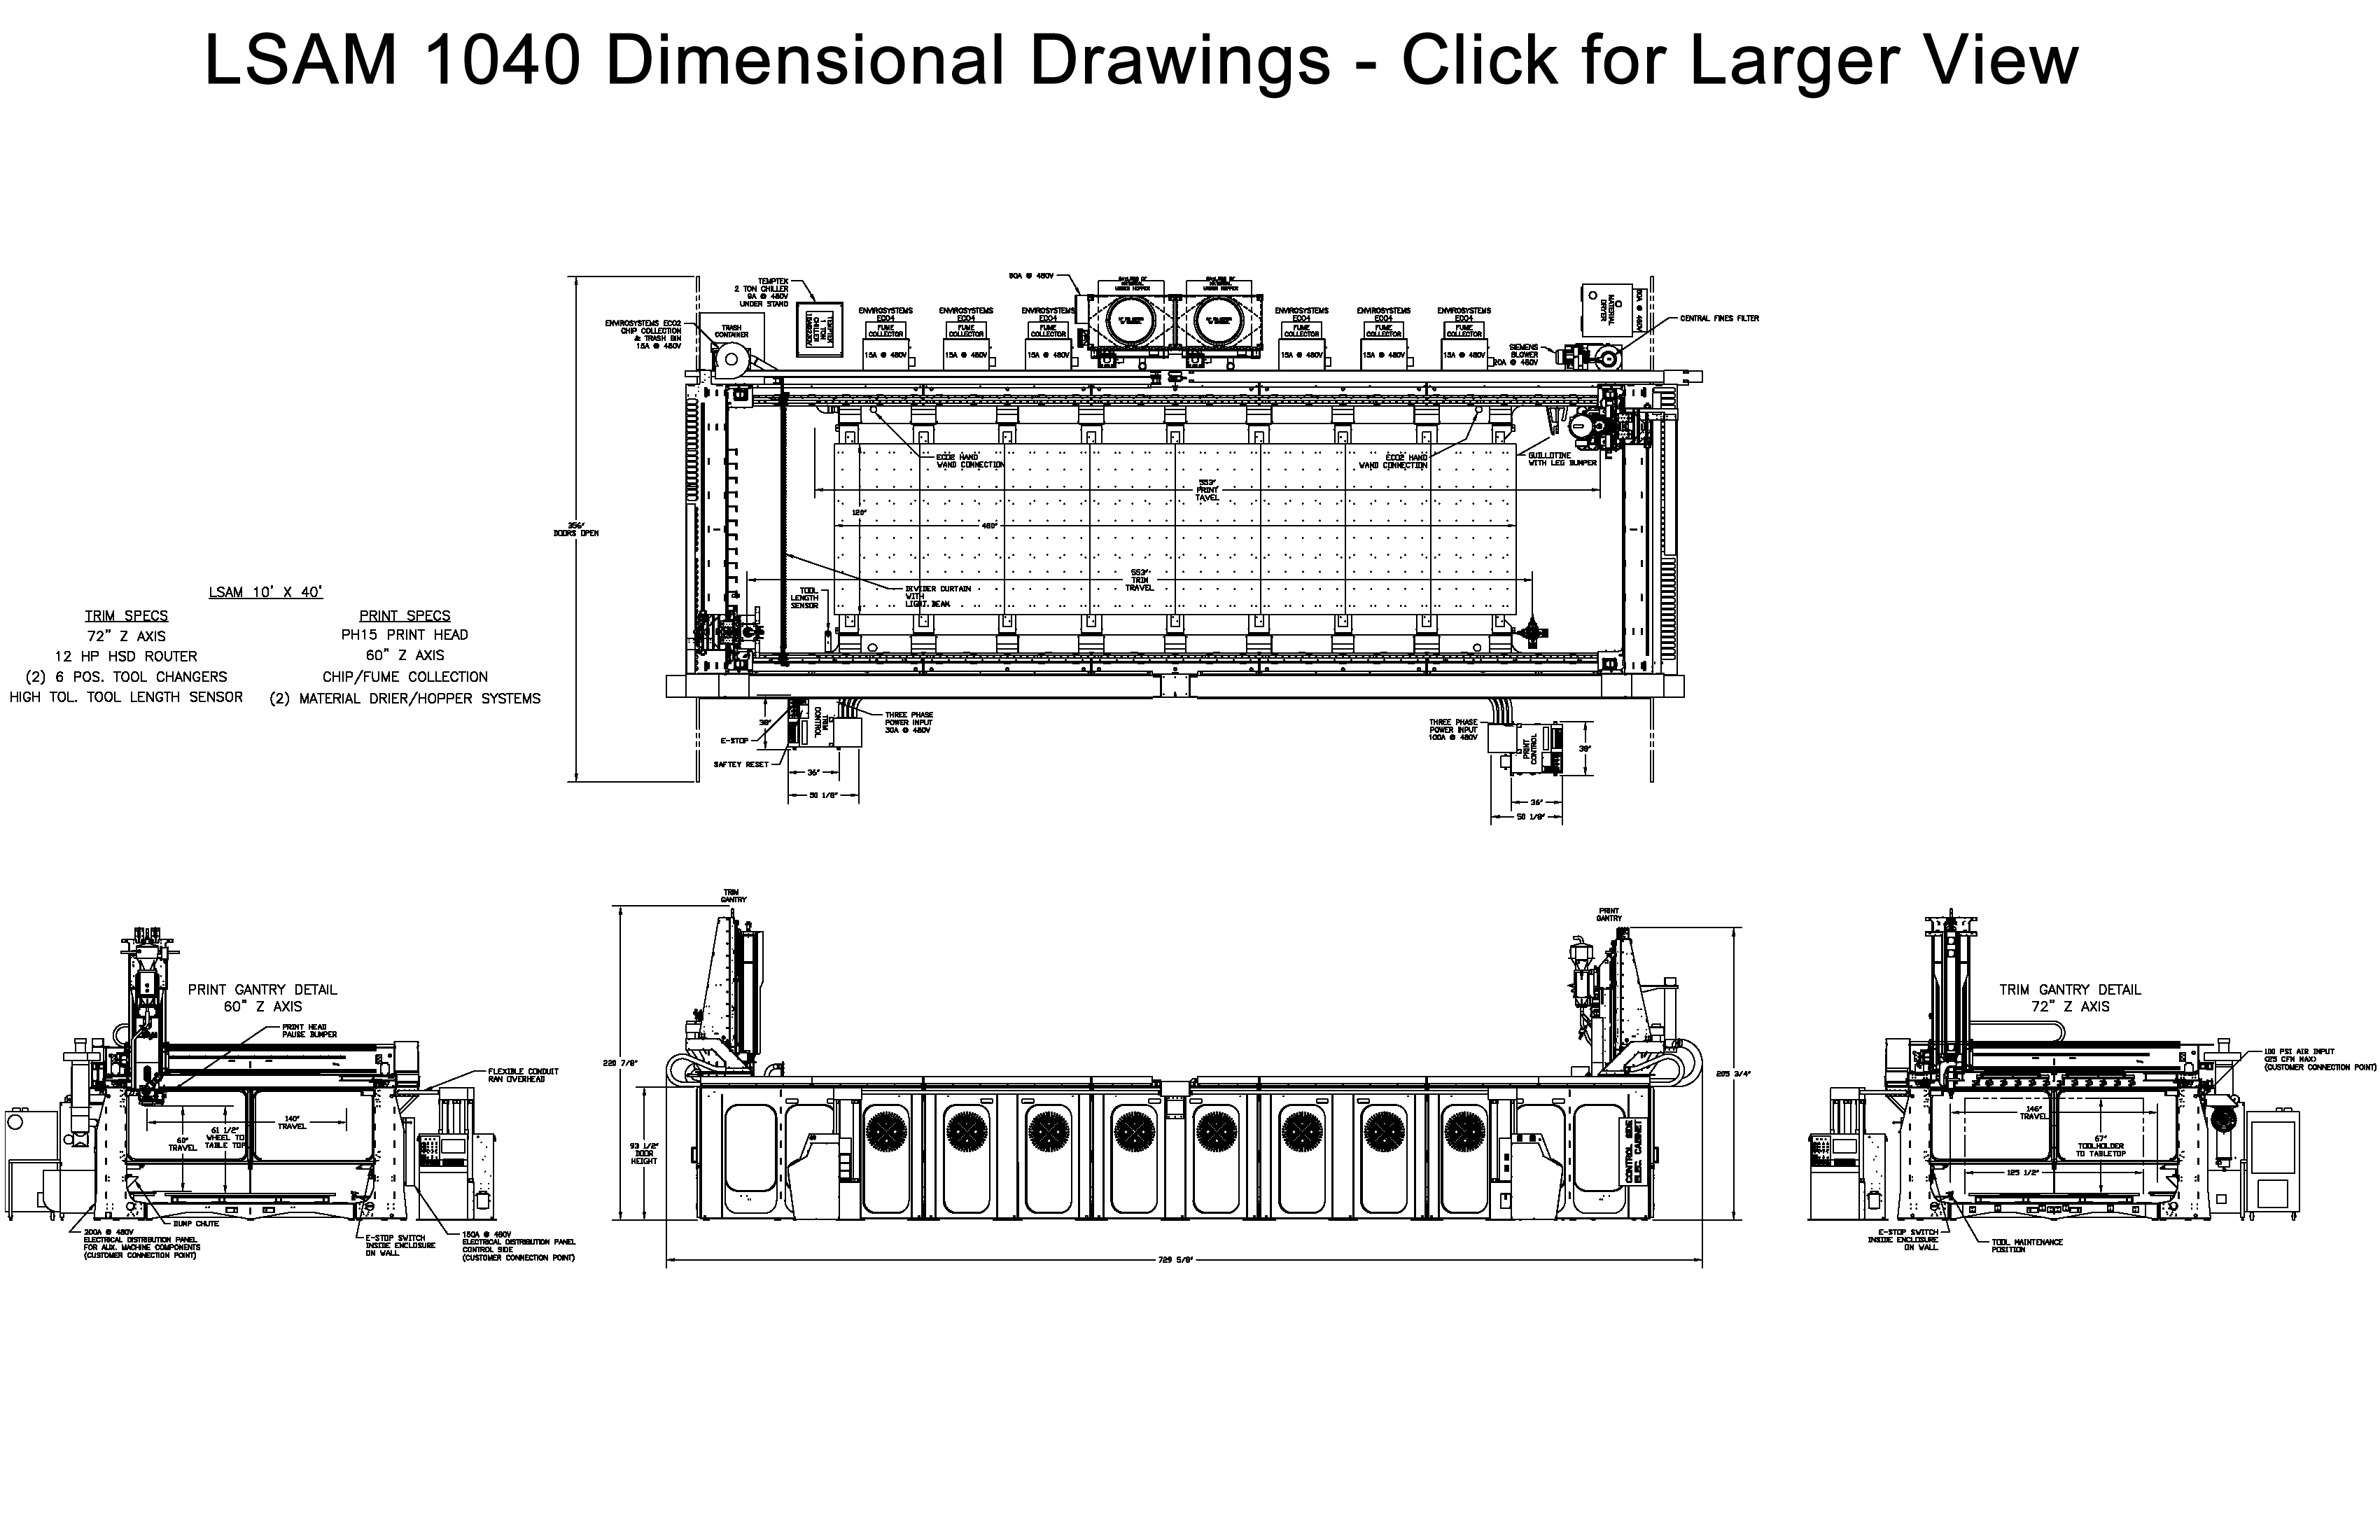 LSAM 1040 Dimensional Drawings Shown